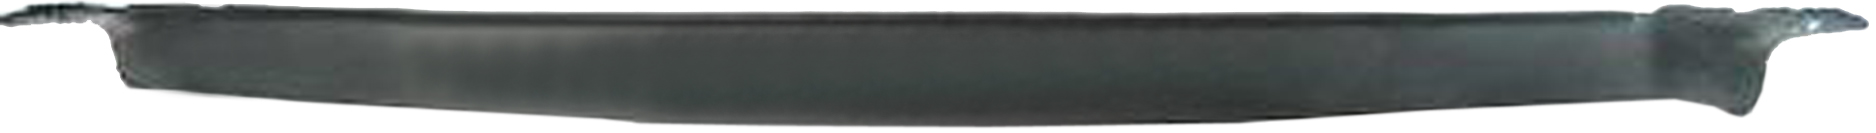 Aftermarket APRON/VALANCE/FILLER PLASTIC for GMC - V1500, V1500,87-87,Front bumper deflector